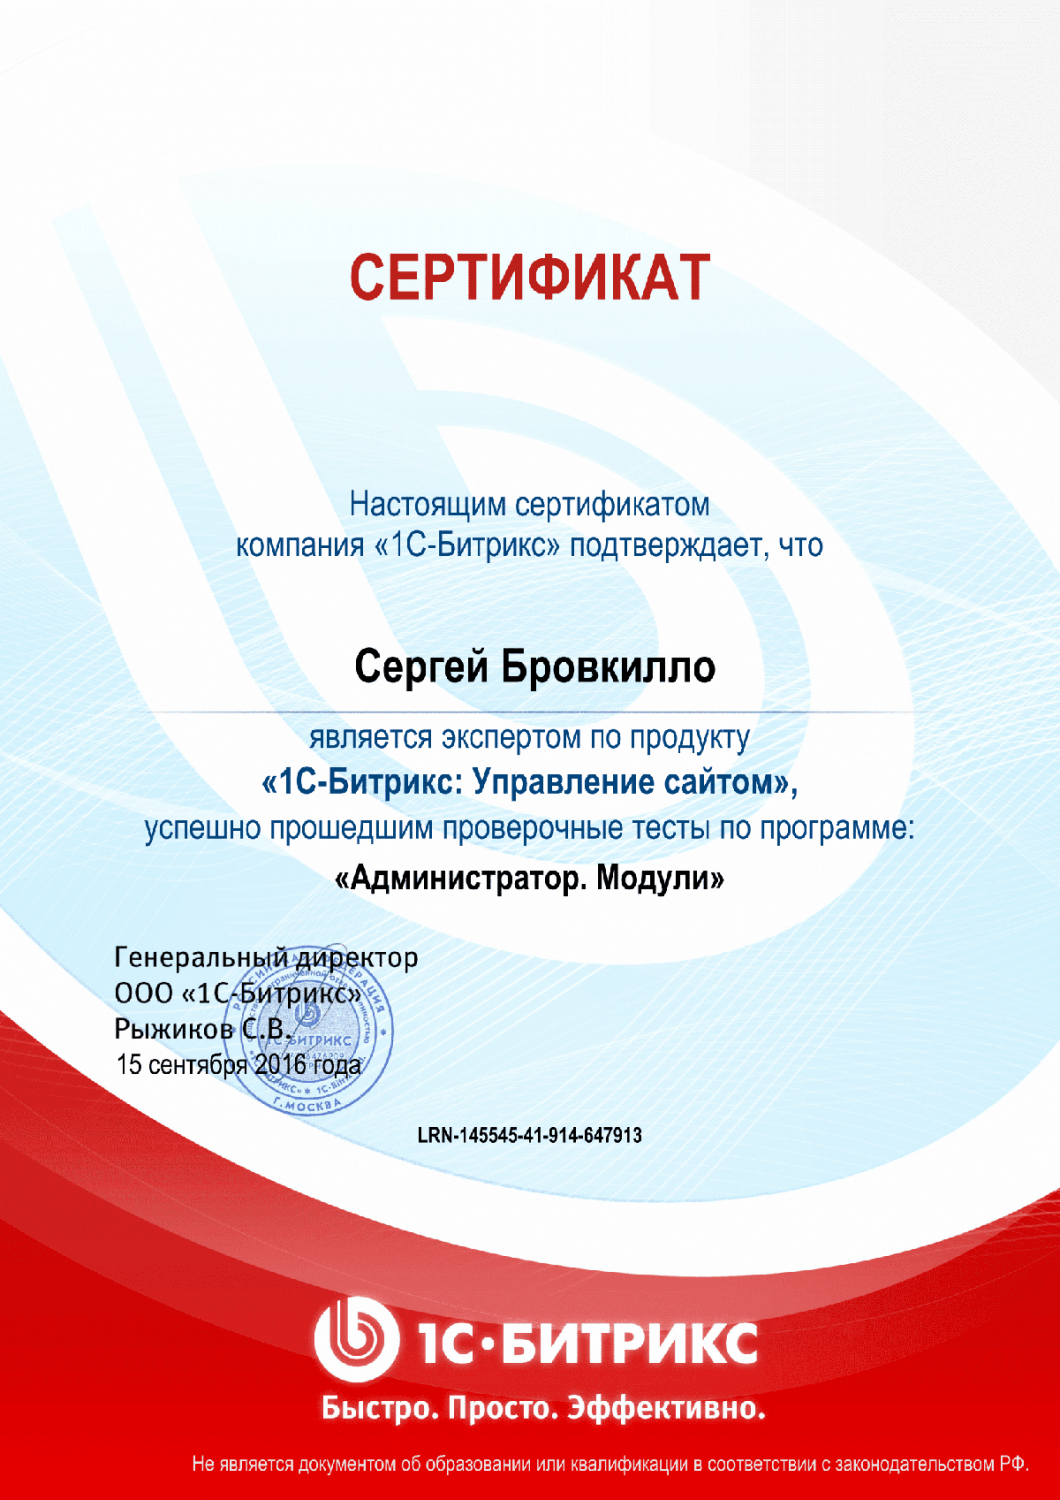 Сертификат эксперта по программе "Администратор. Модули" в Вологды